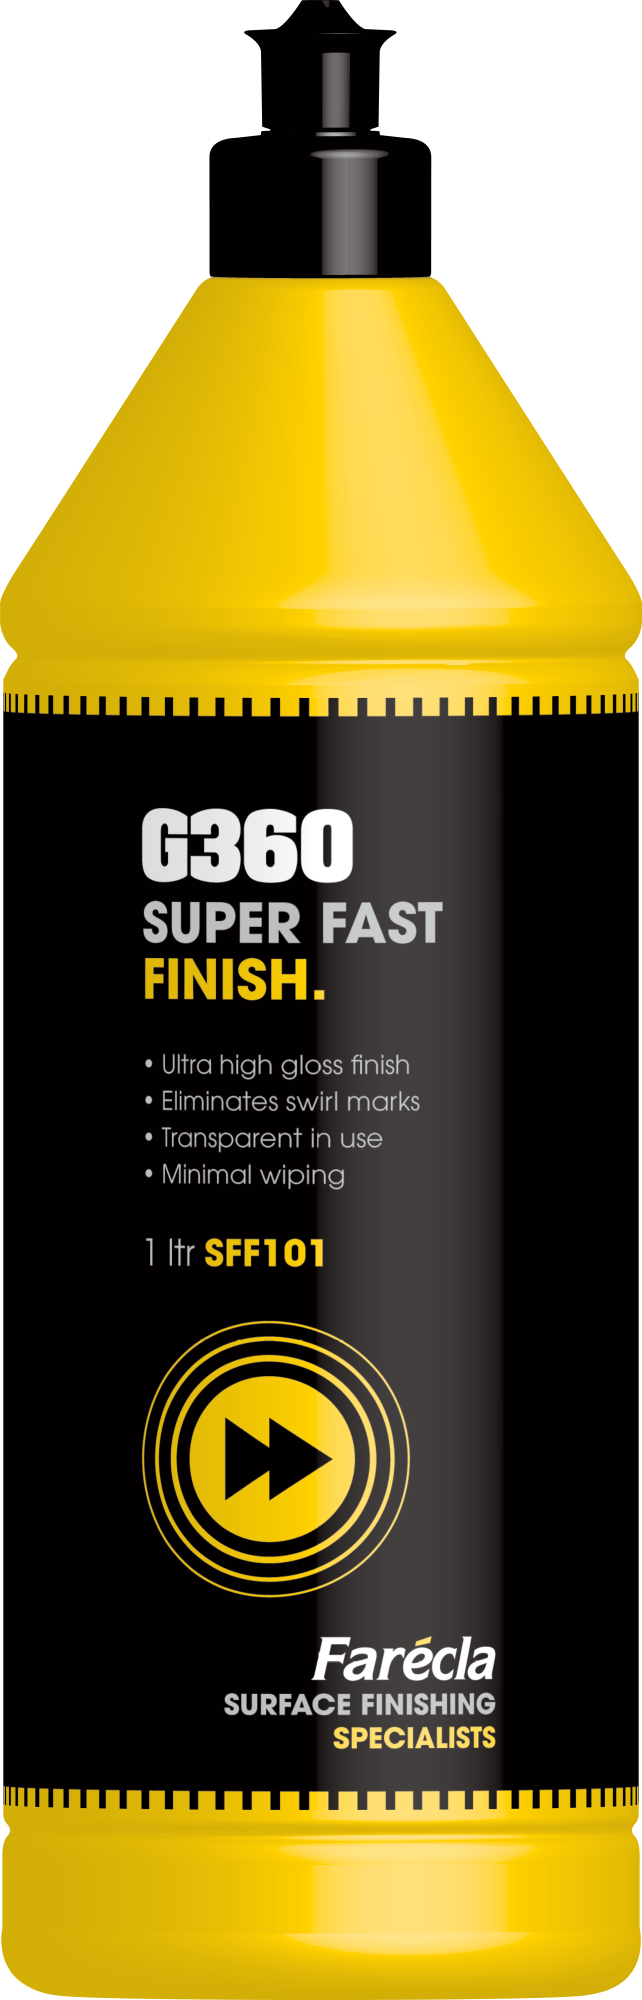 G360 Super Fast Finish 1л. Farecla SFF101